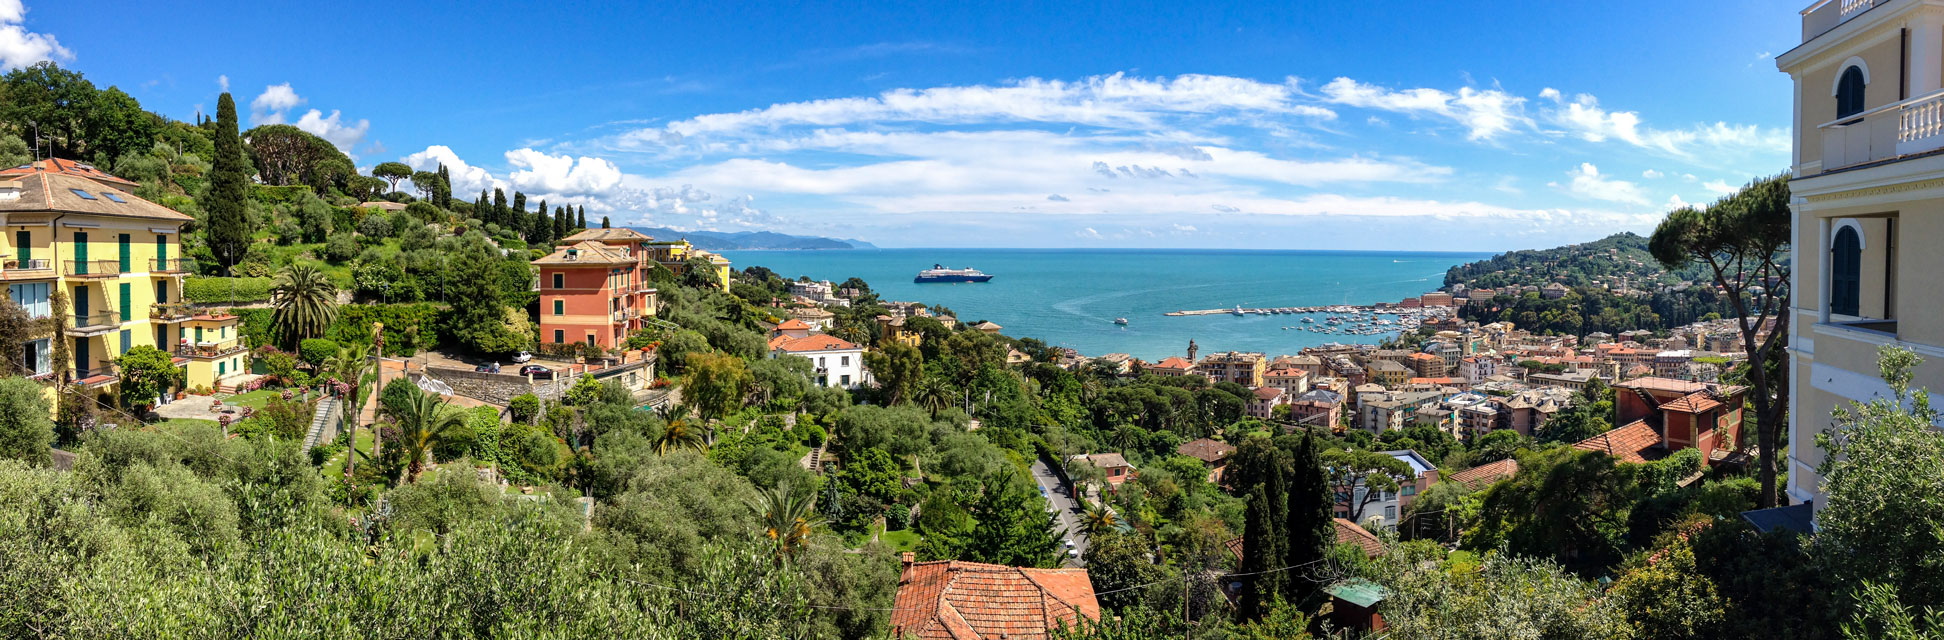 View of Santa Margherita Ligure bay, Italy near Genoa